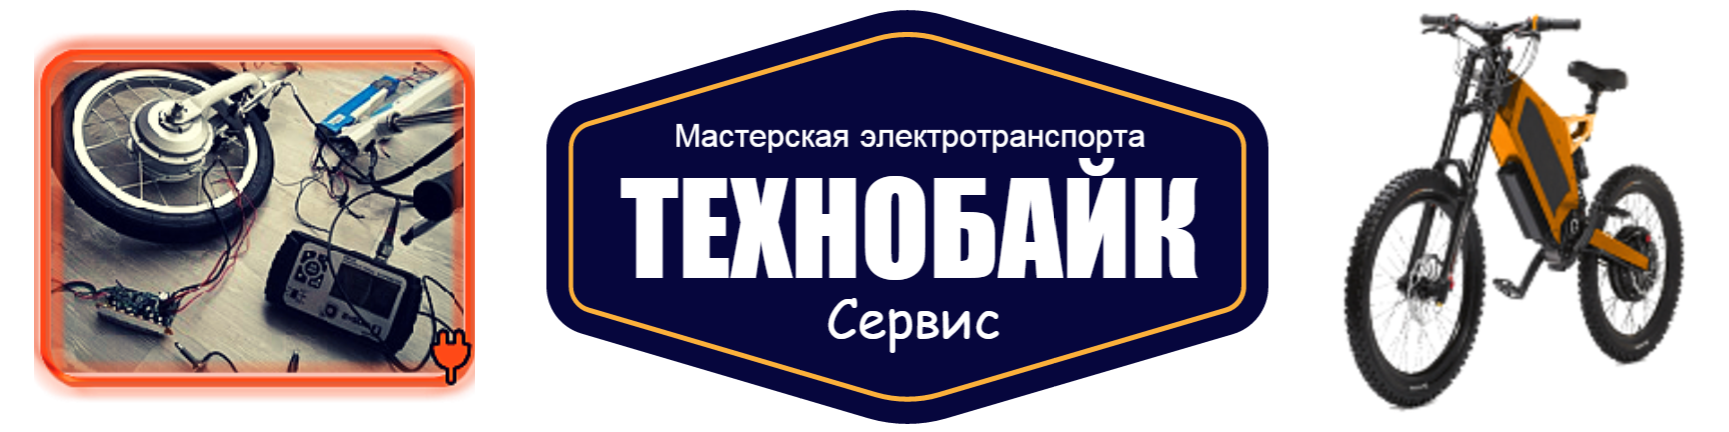 logo glavnaya3